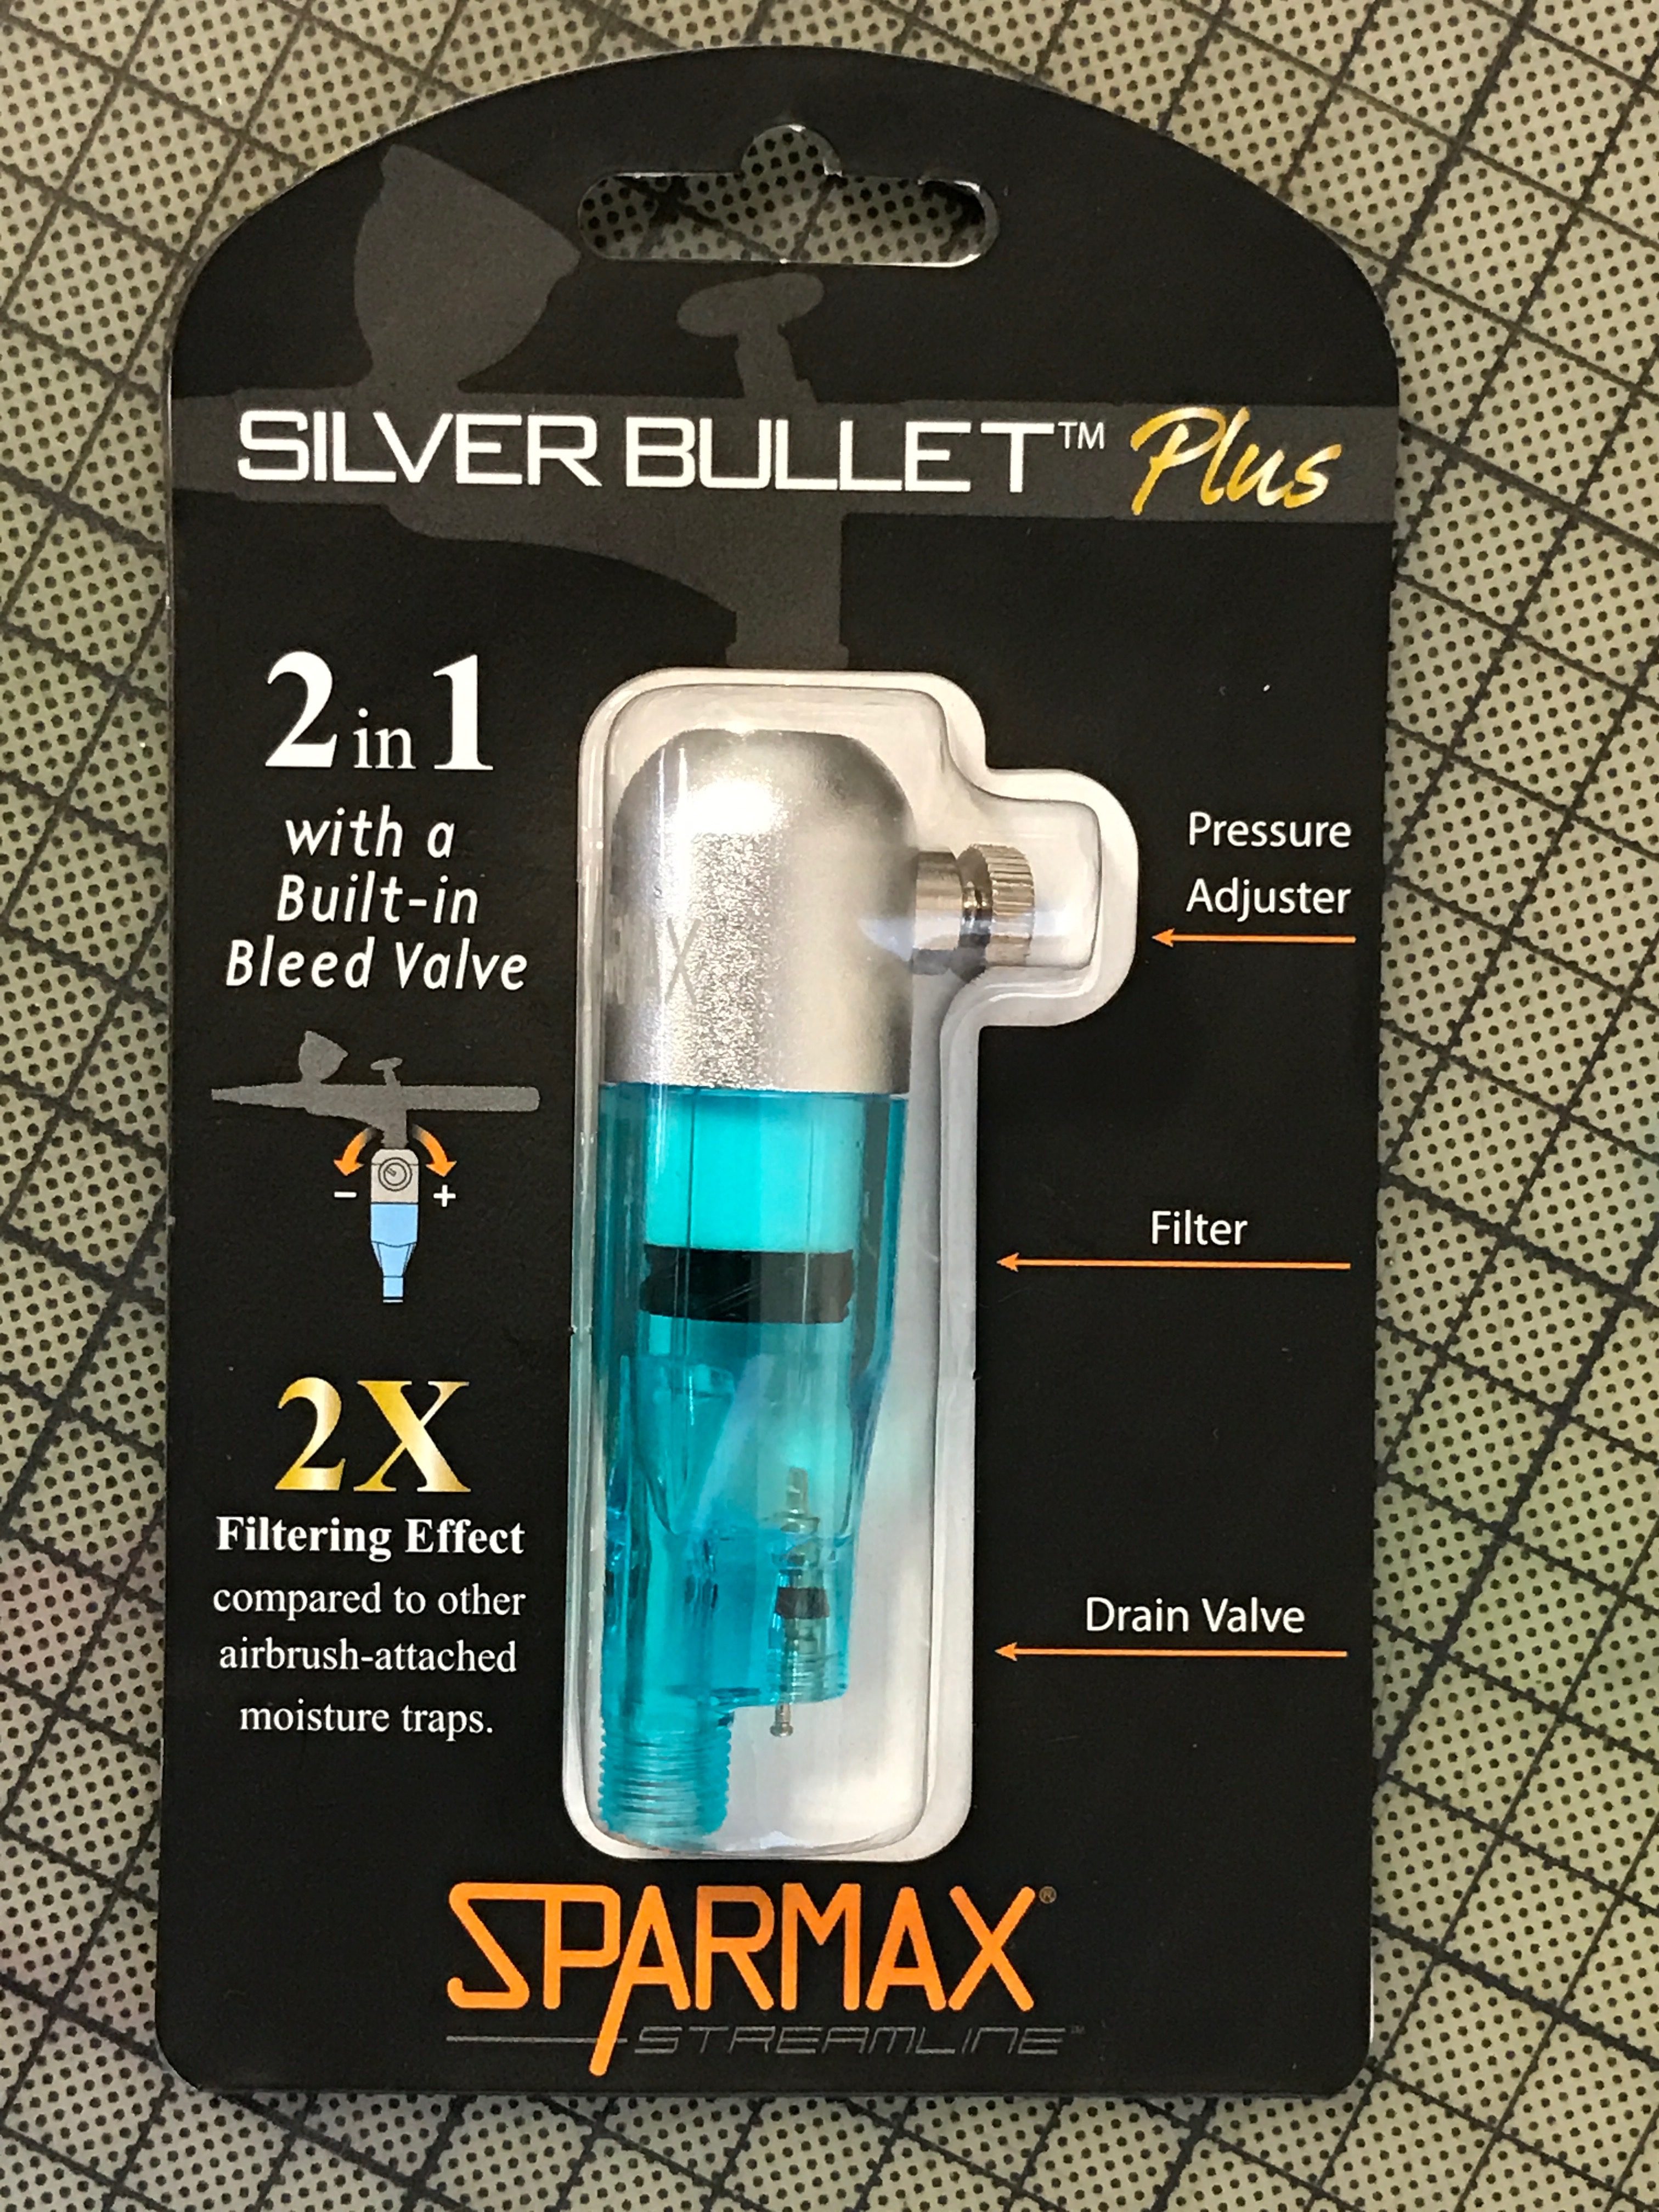 Sparmax Silver Bullet Plus: Saubere und trockene Luft garantiert!